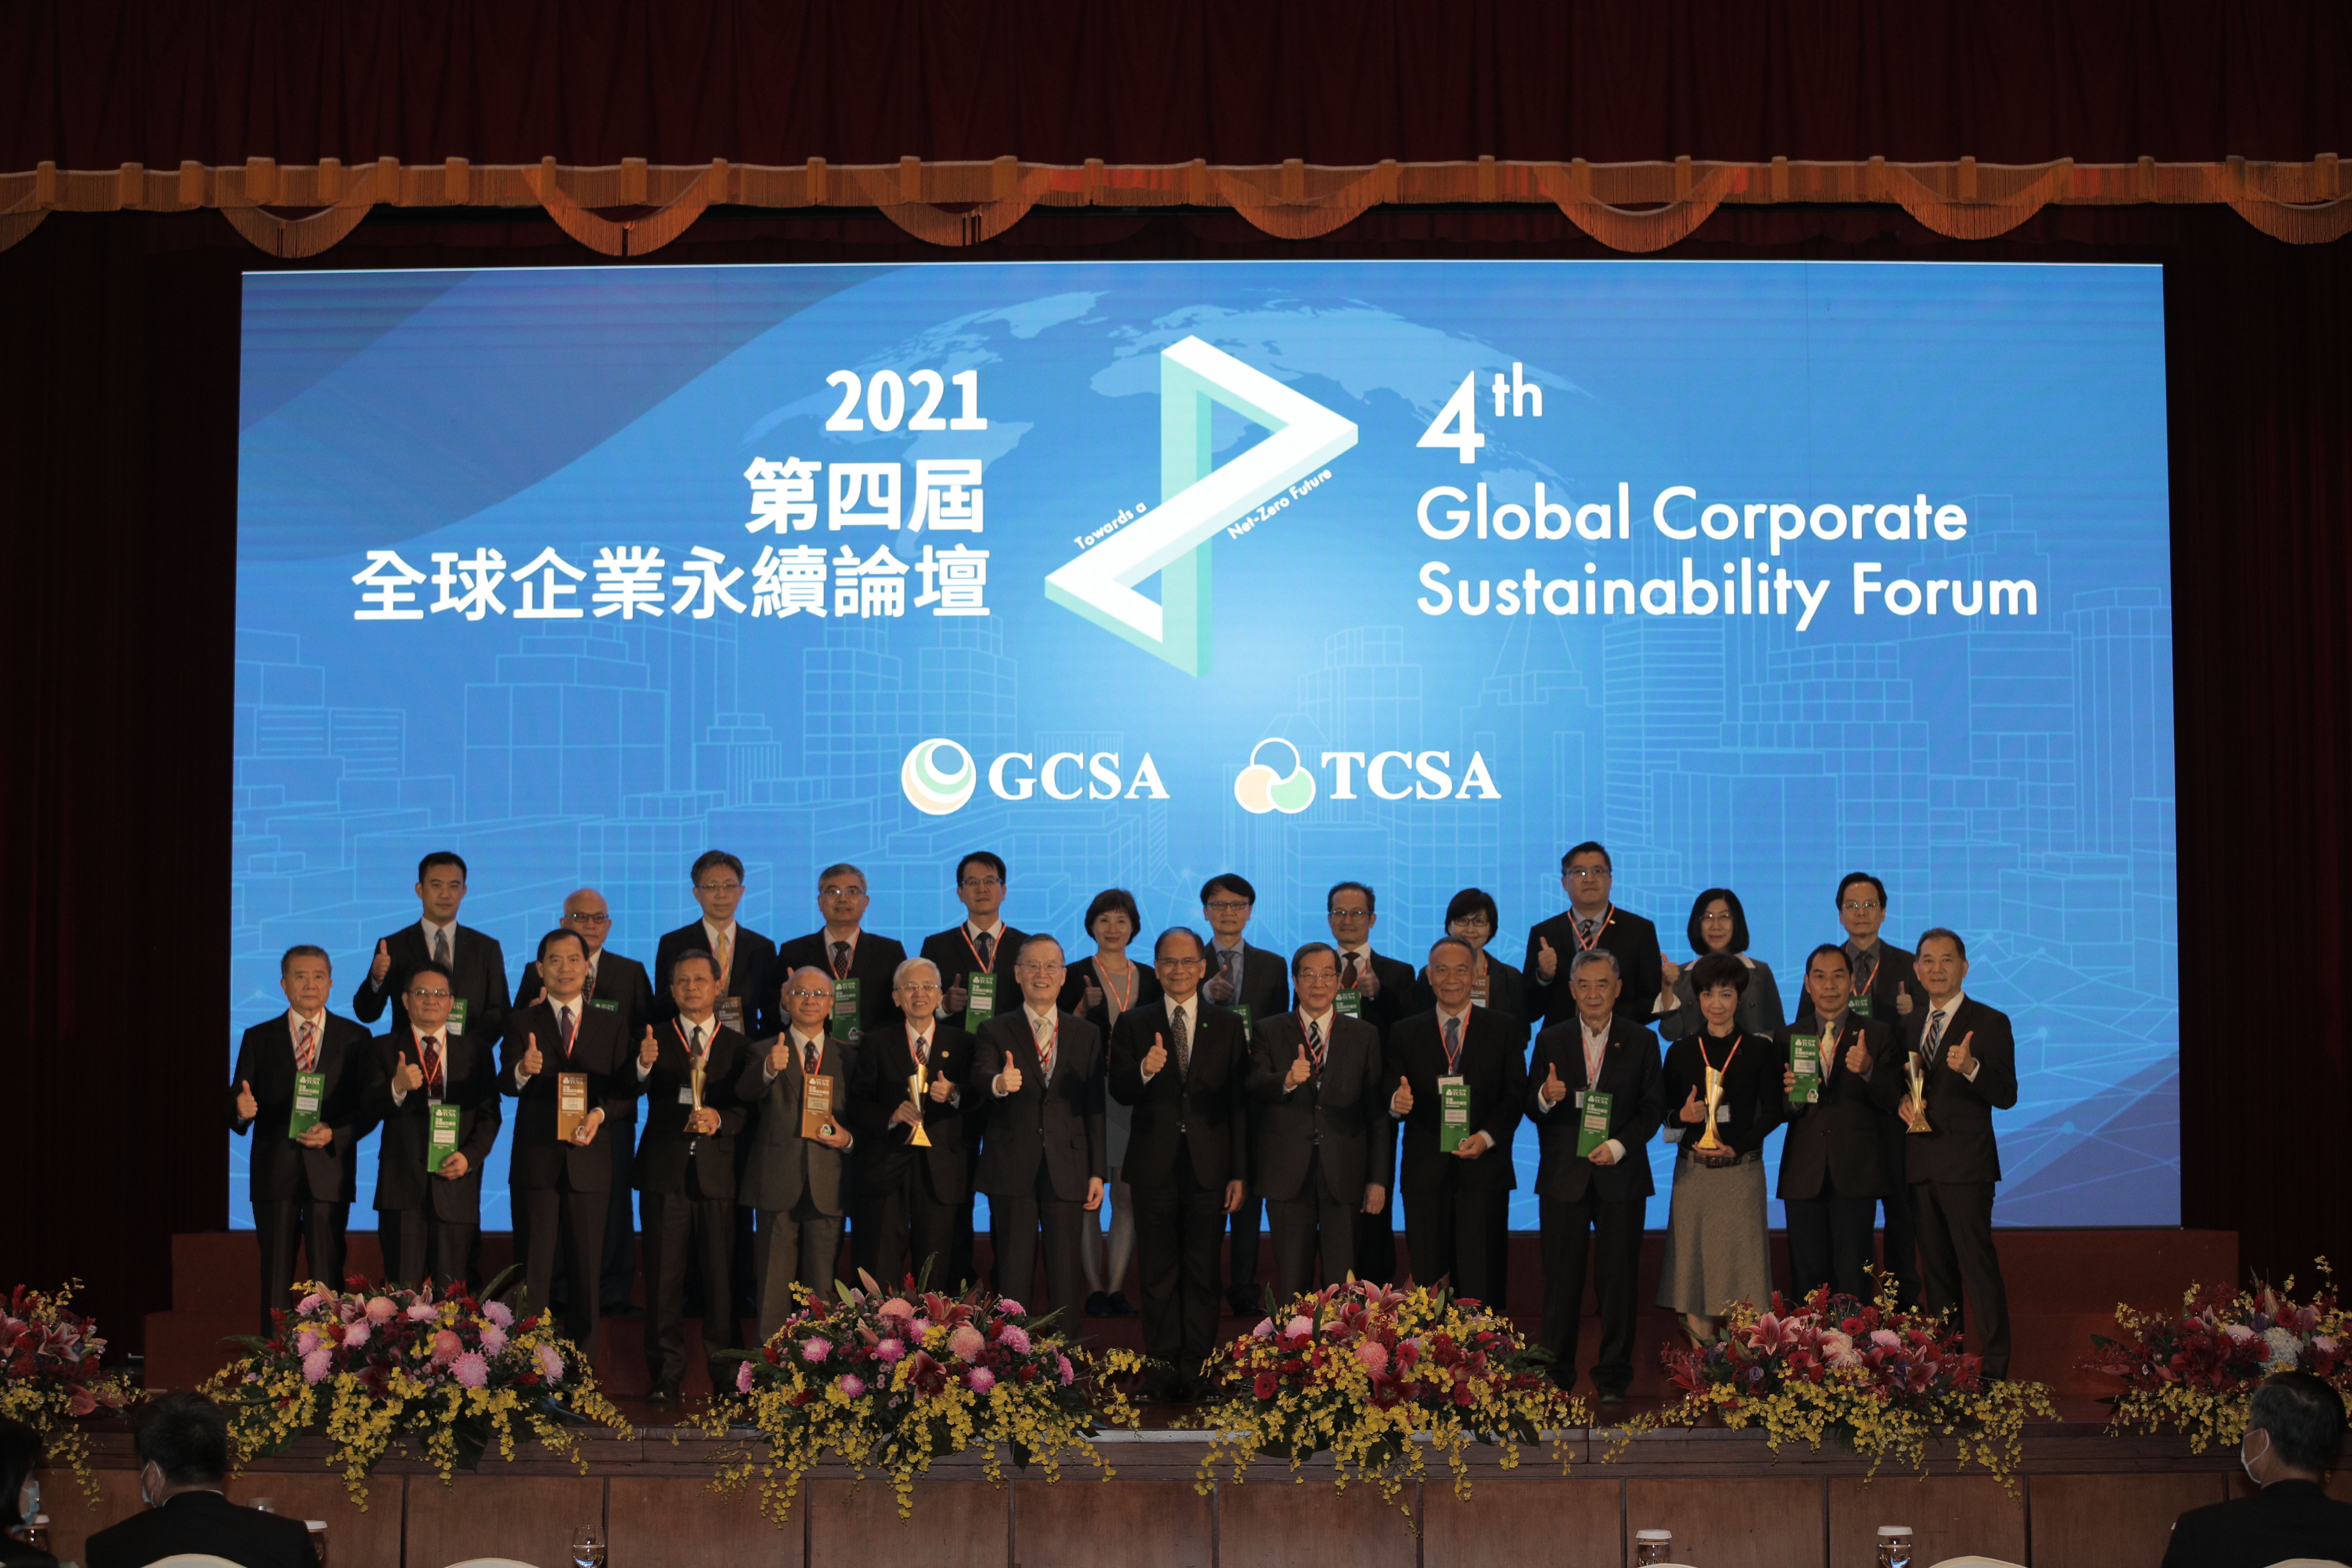 本公司參加「2021 TCSA 台灣企業永續獎」評選，榮獲金融及保險業「台灣永續企業–績優獎」、「永續報告–白金獎」及「永續單項績效–社會共融領袖獎」等3項殊榮